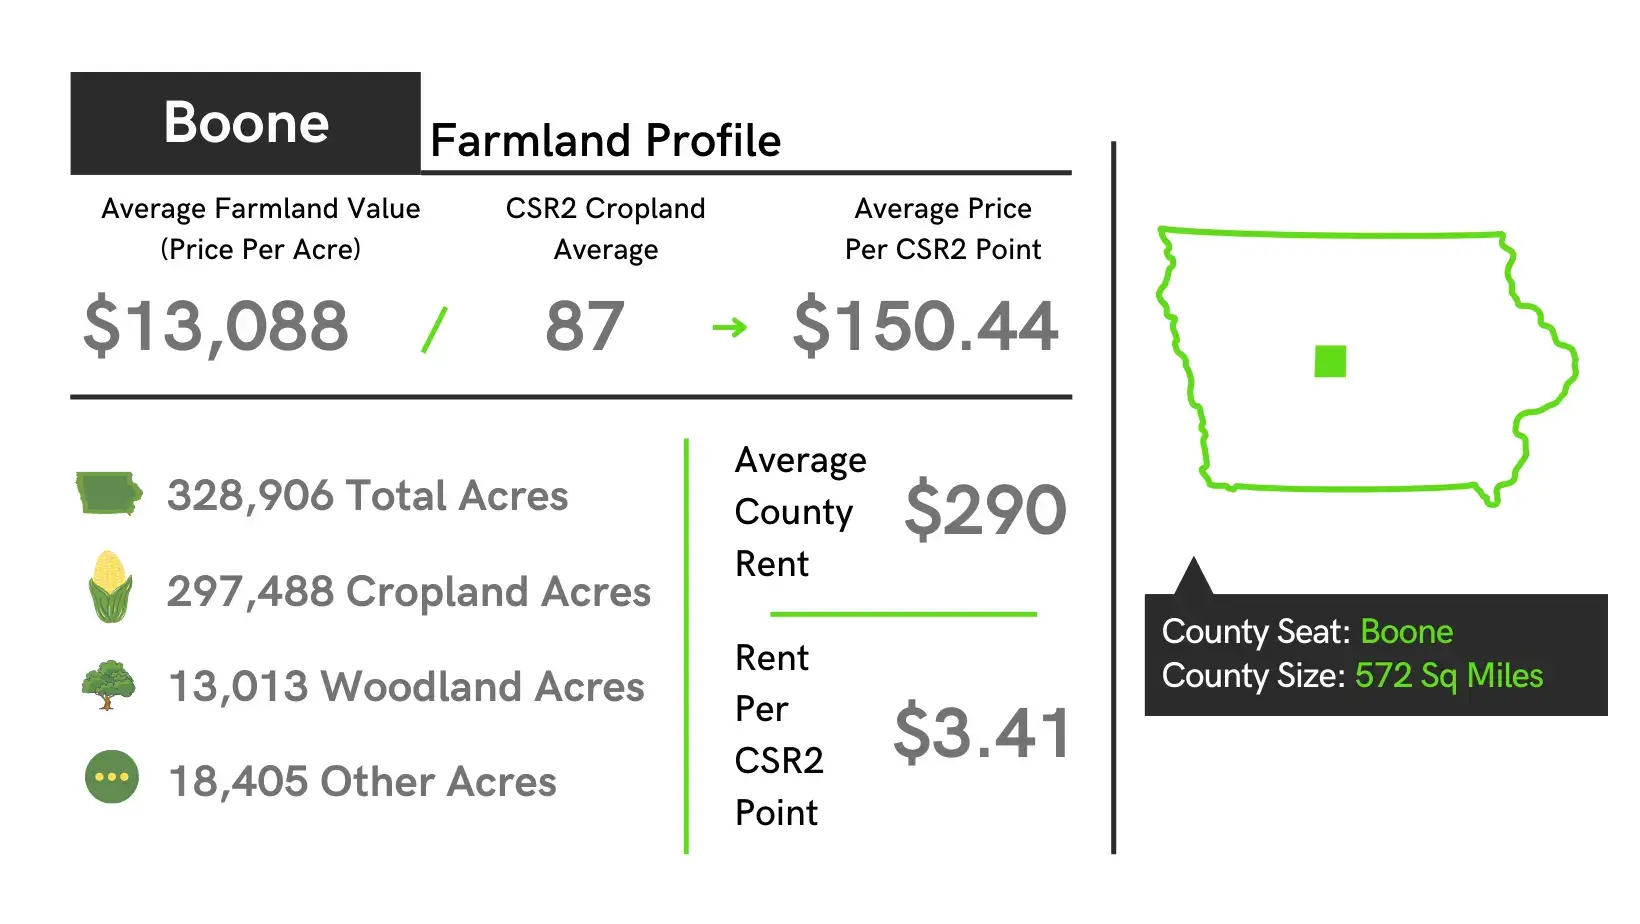 Boone County Farmland Profile